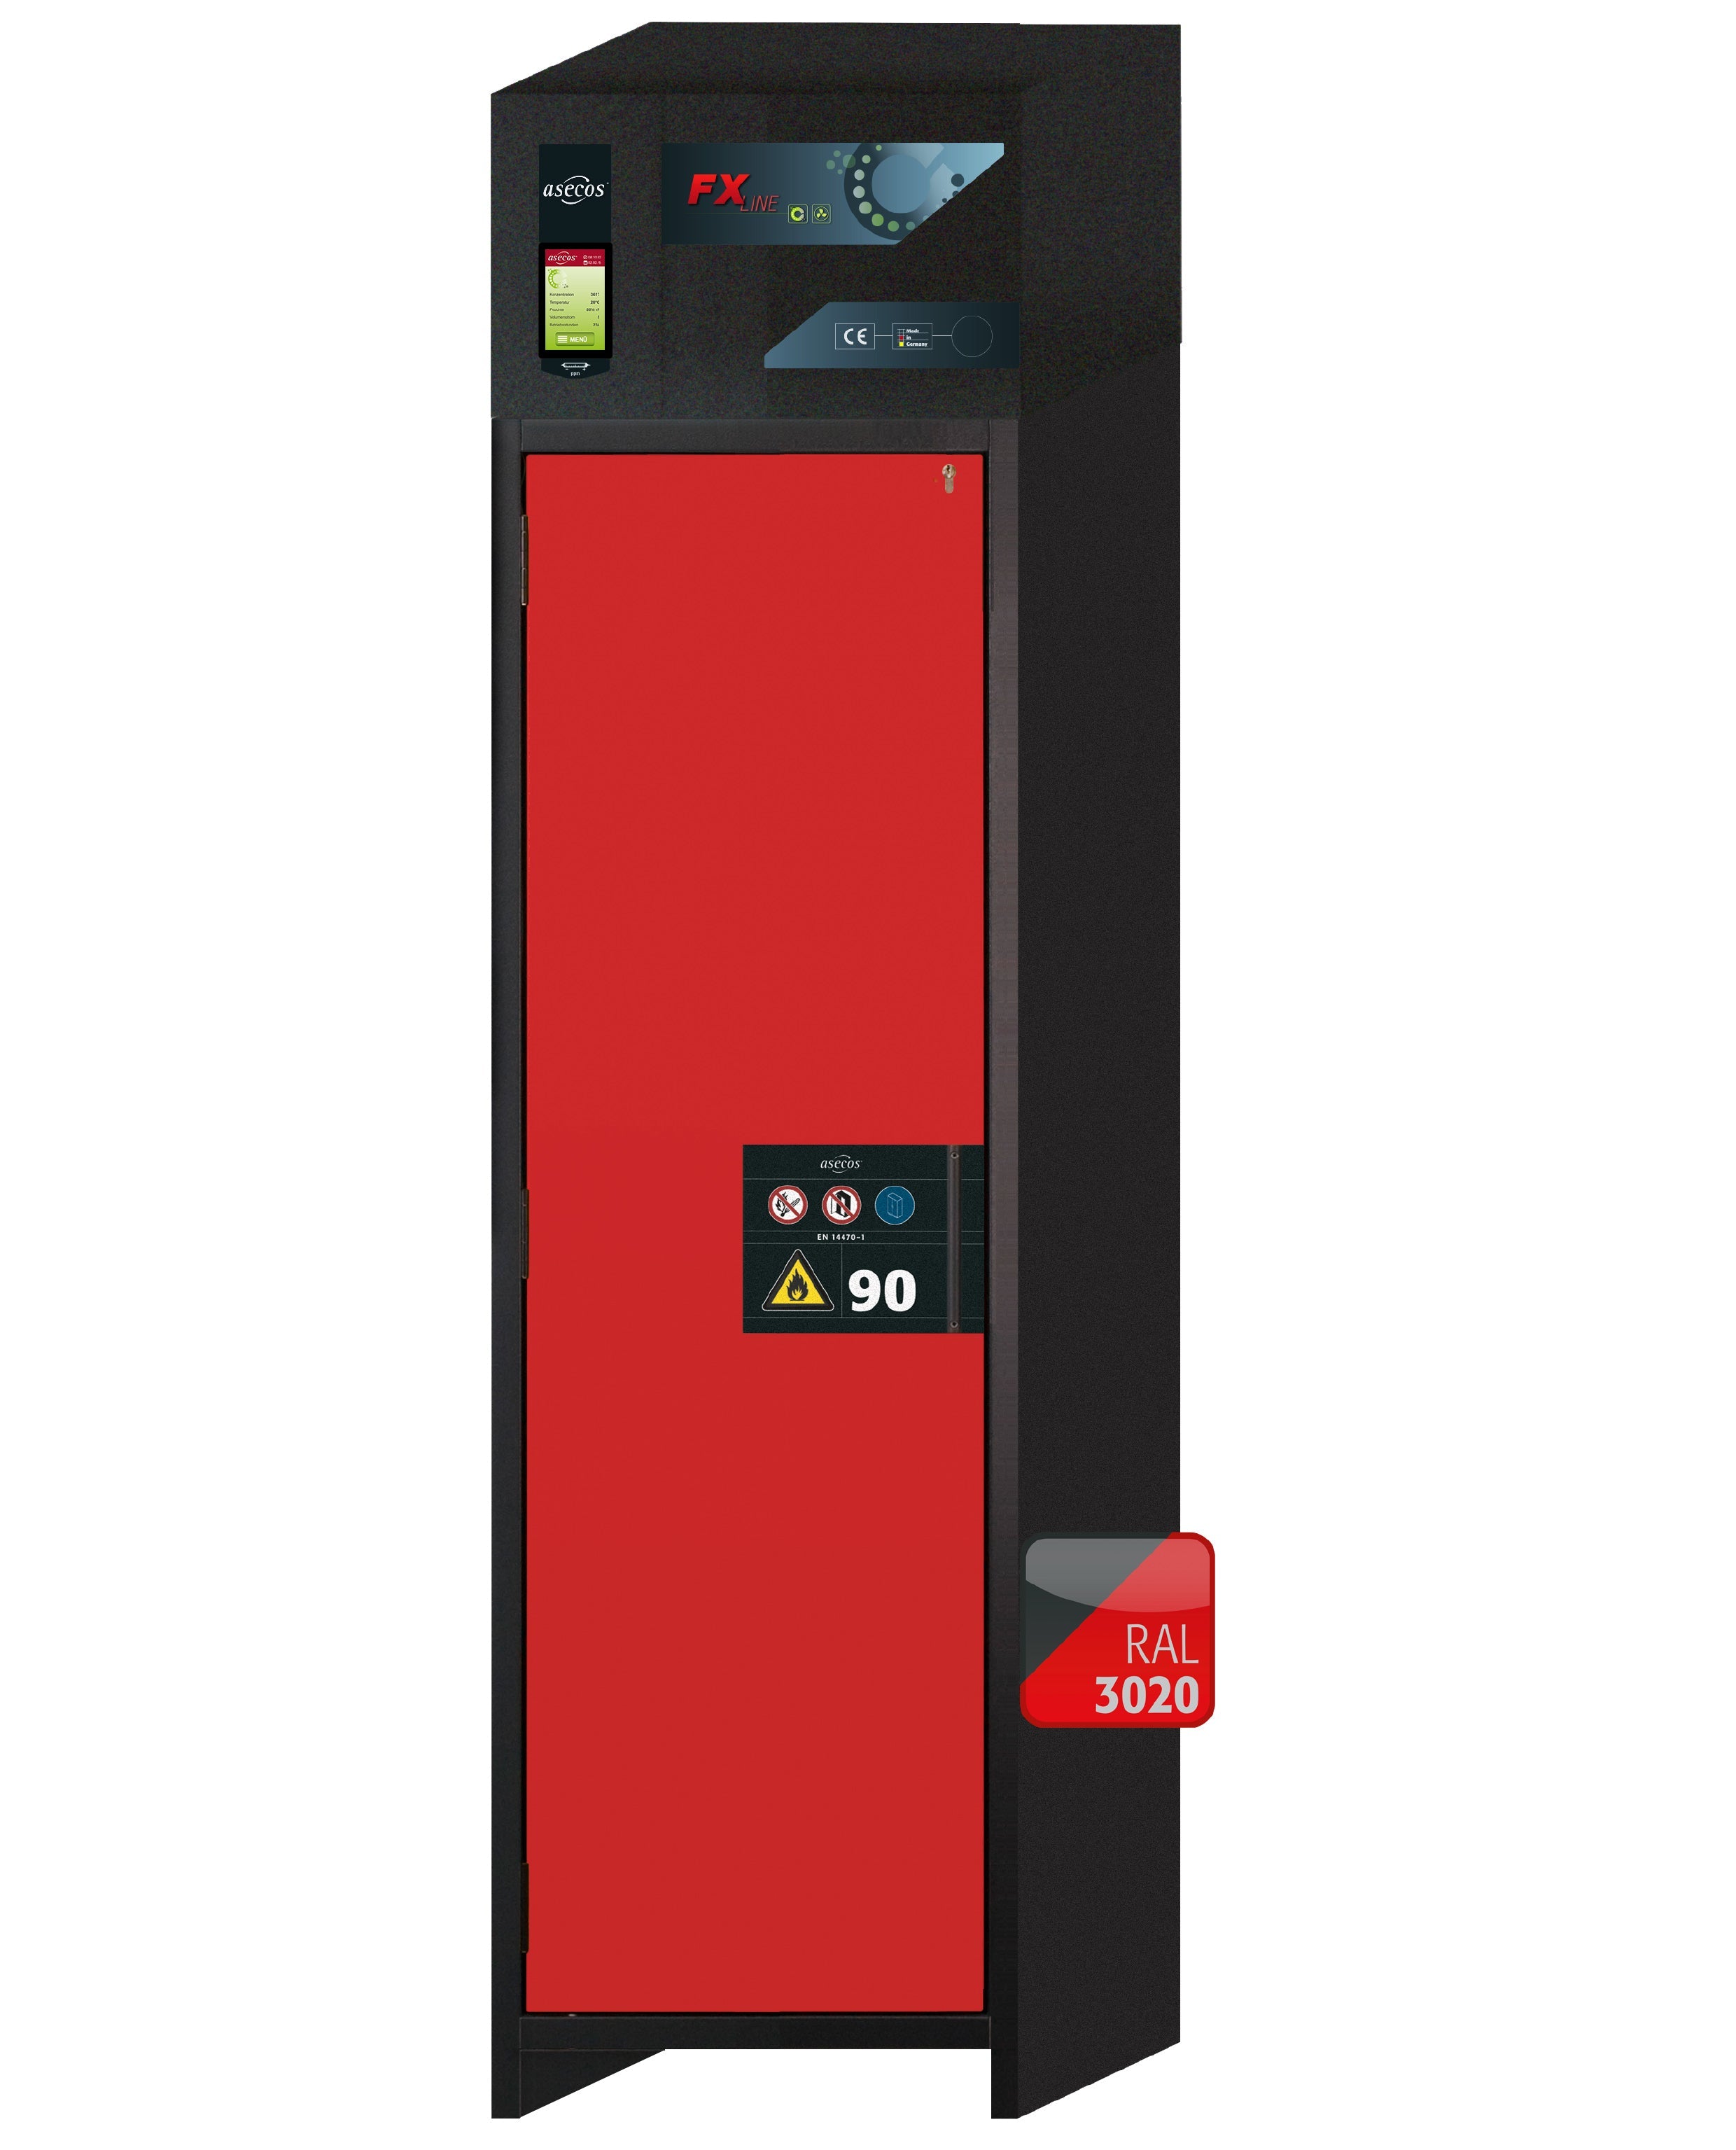 Armoire de filtration d'air de recirculation de type 90 FX-PEGASUS-90 modèle FX90.229.060.WDAC en rouge signalisation RAL 3020 avec 2x pieds de plateau standard (acier inoxydable 1.4301)